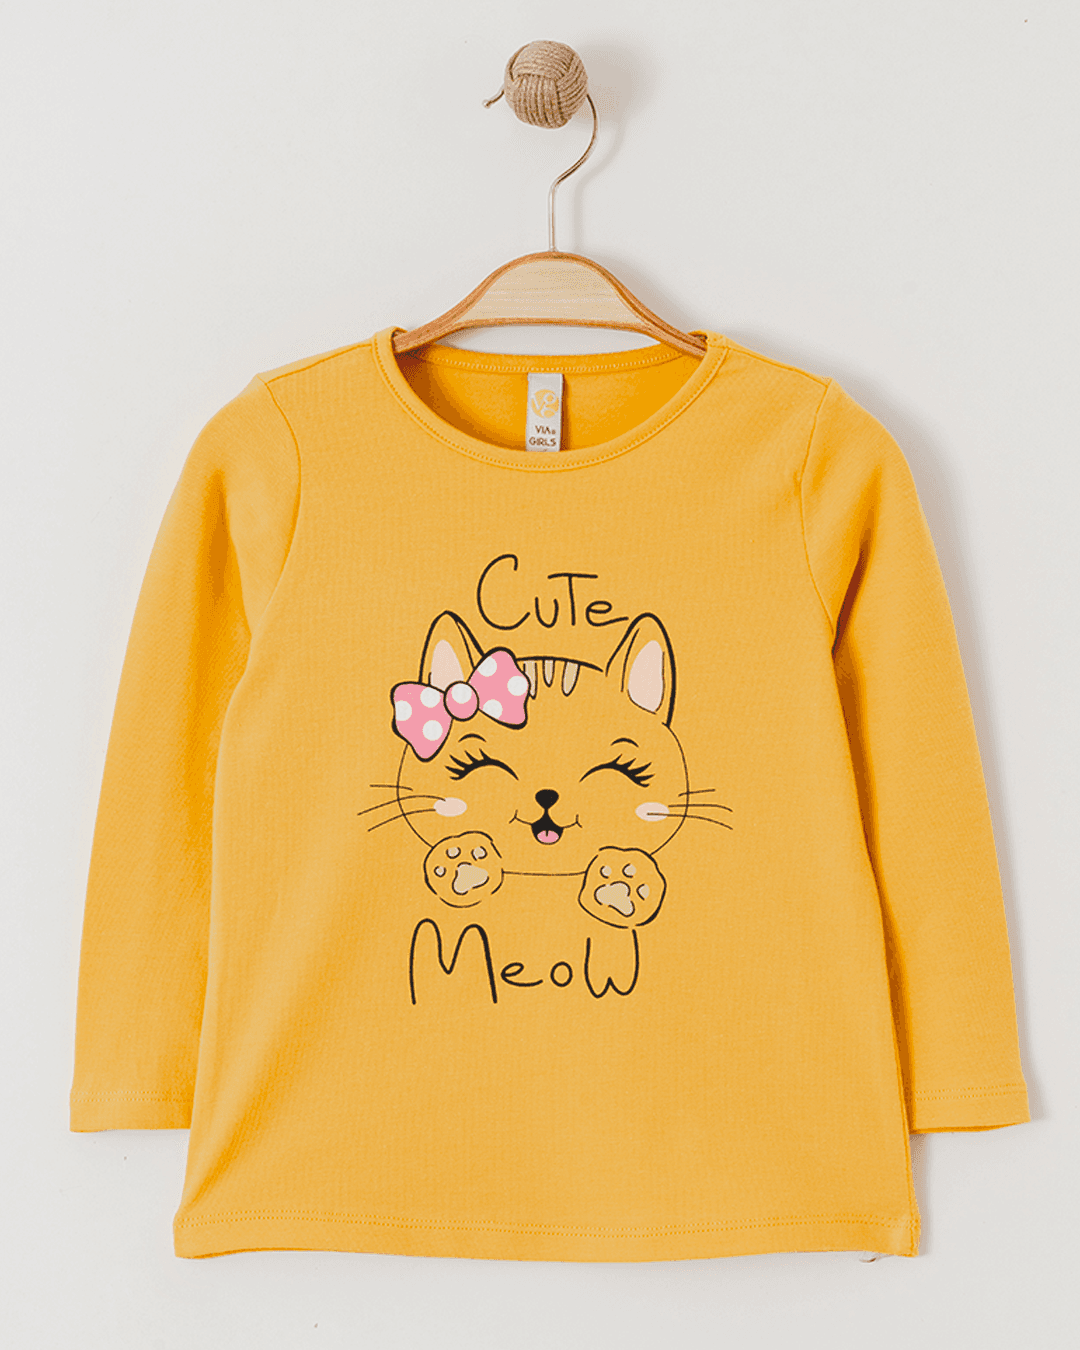 Selected image for VIA GIRLS Majica za devojčice Cute Meow, Žuta